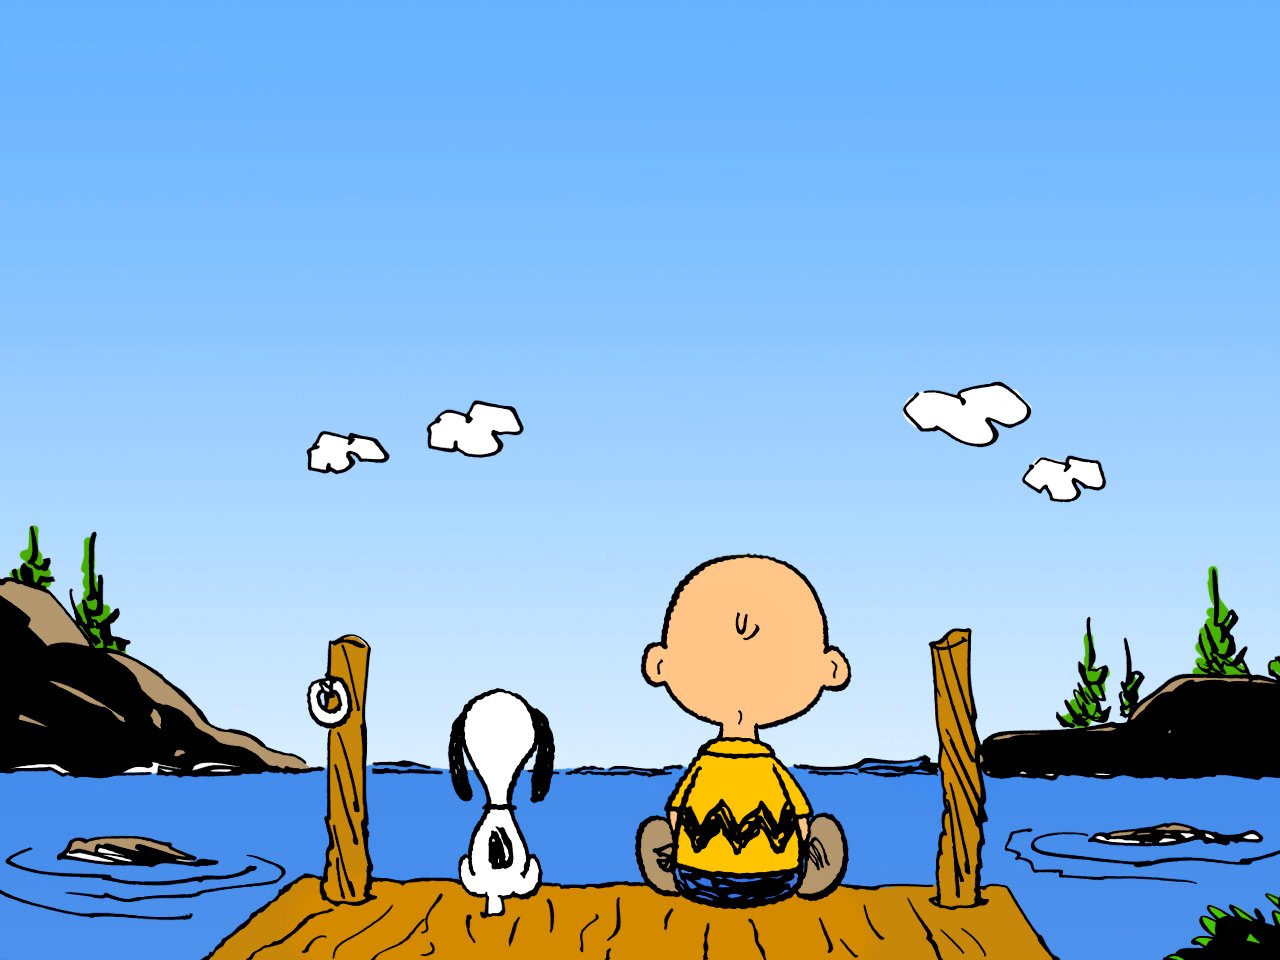 Free Charlie Brown Desktop Wallpaper - WallpaperSafari